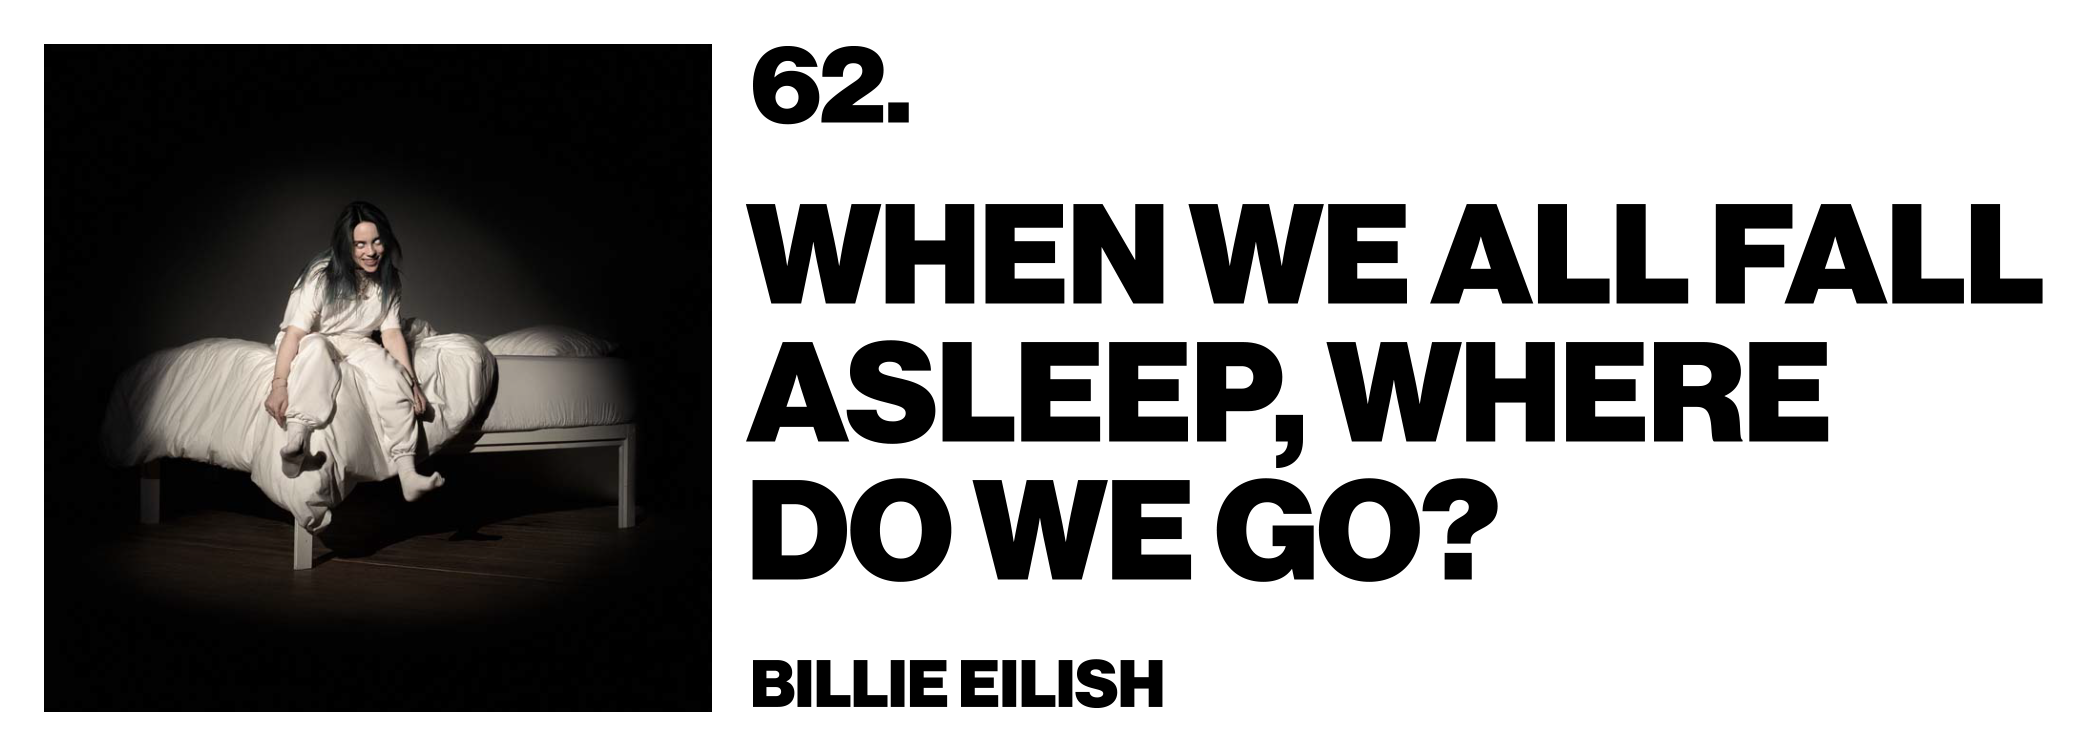 1575927062726-62-Billie-Eilish-When-We-All-Fall-Asleep-Where-Do-We-Go_